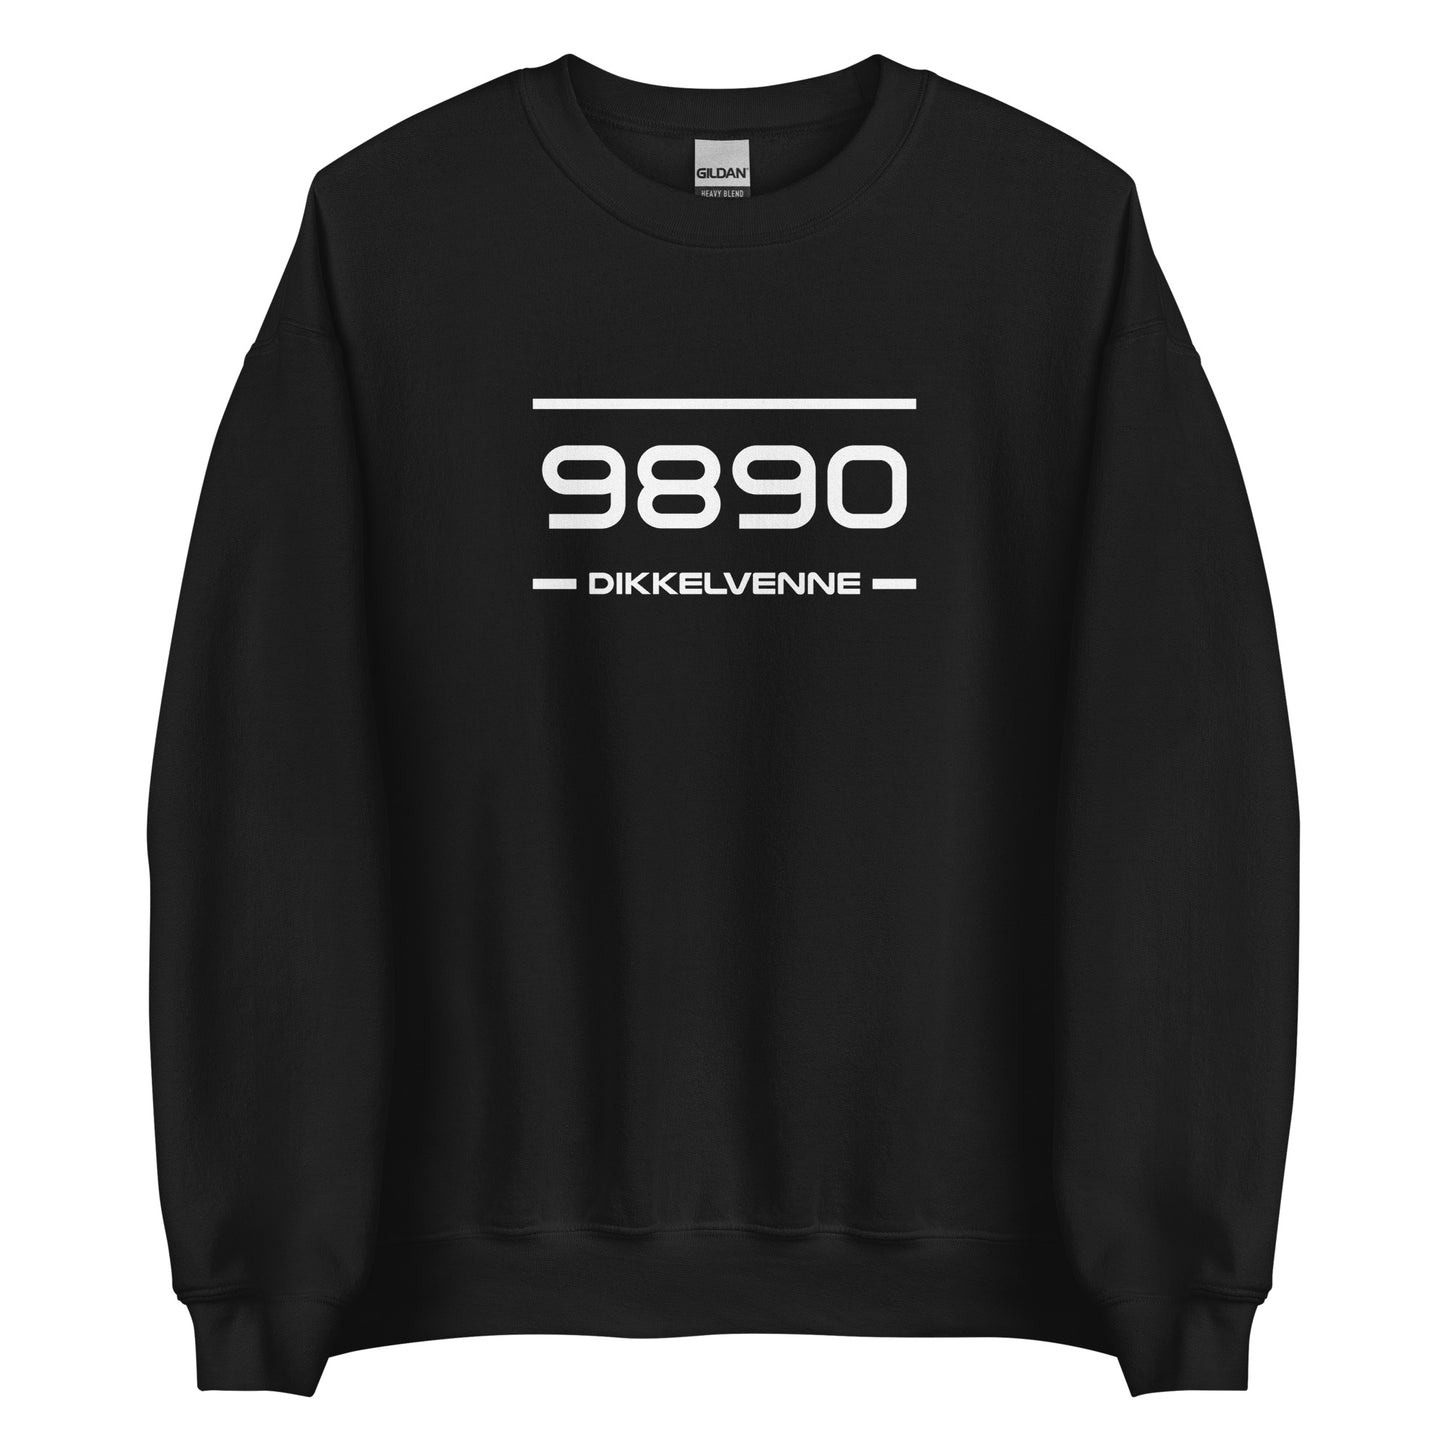 Sweater - 9890 - Dikkelvenne (M/V)